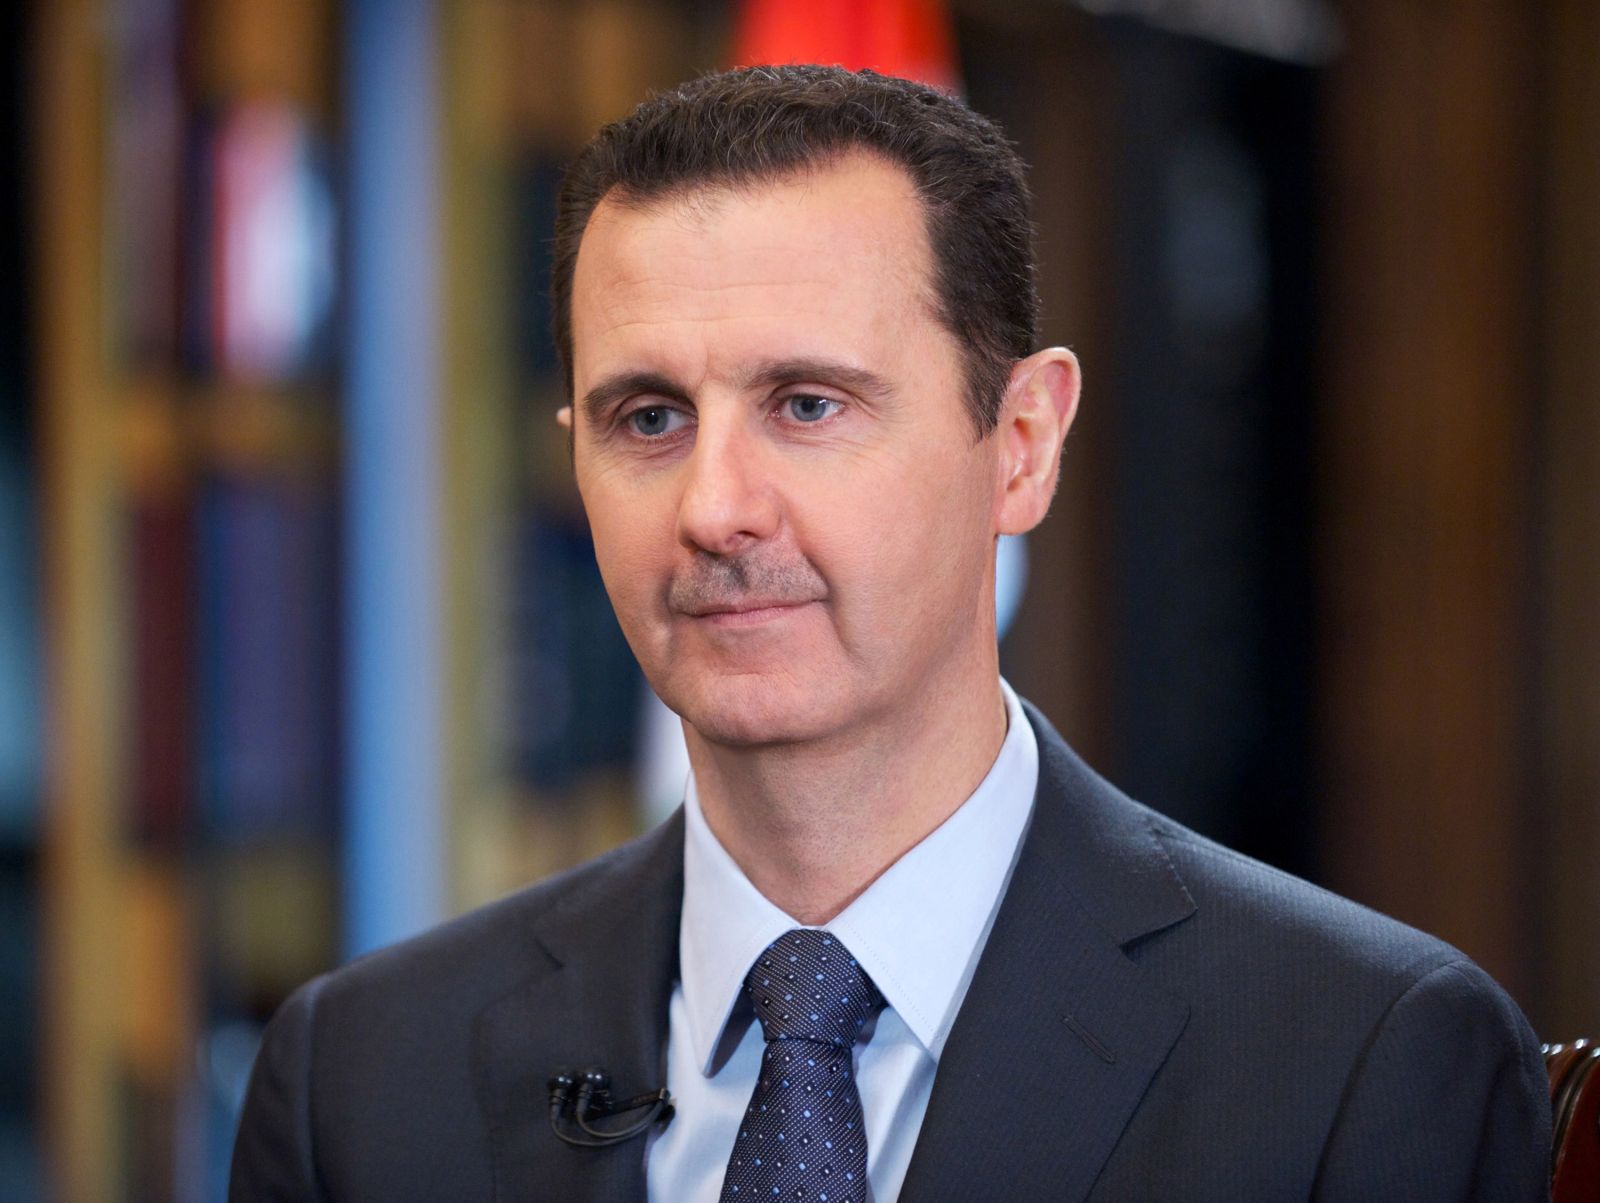 الأسد: الجيش السوري أفشل مخططات الهيمنة والتقسيم التي وضعت للمنطقة